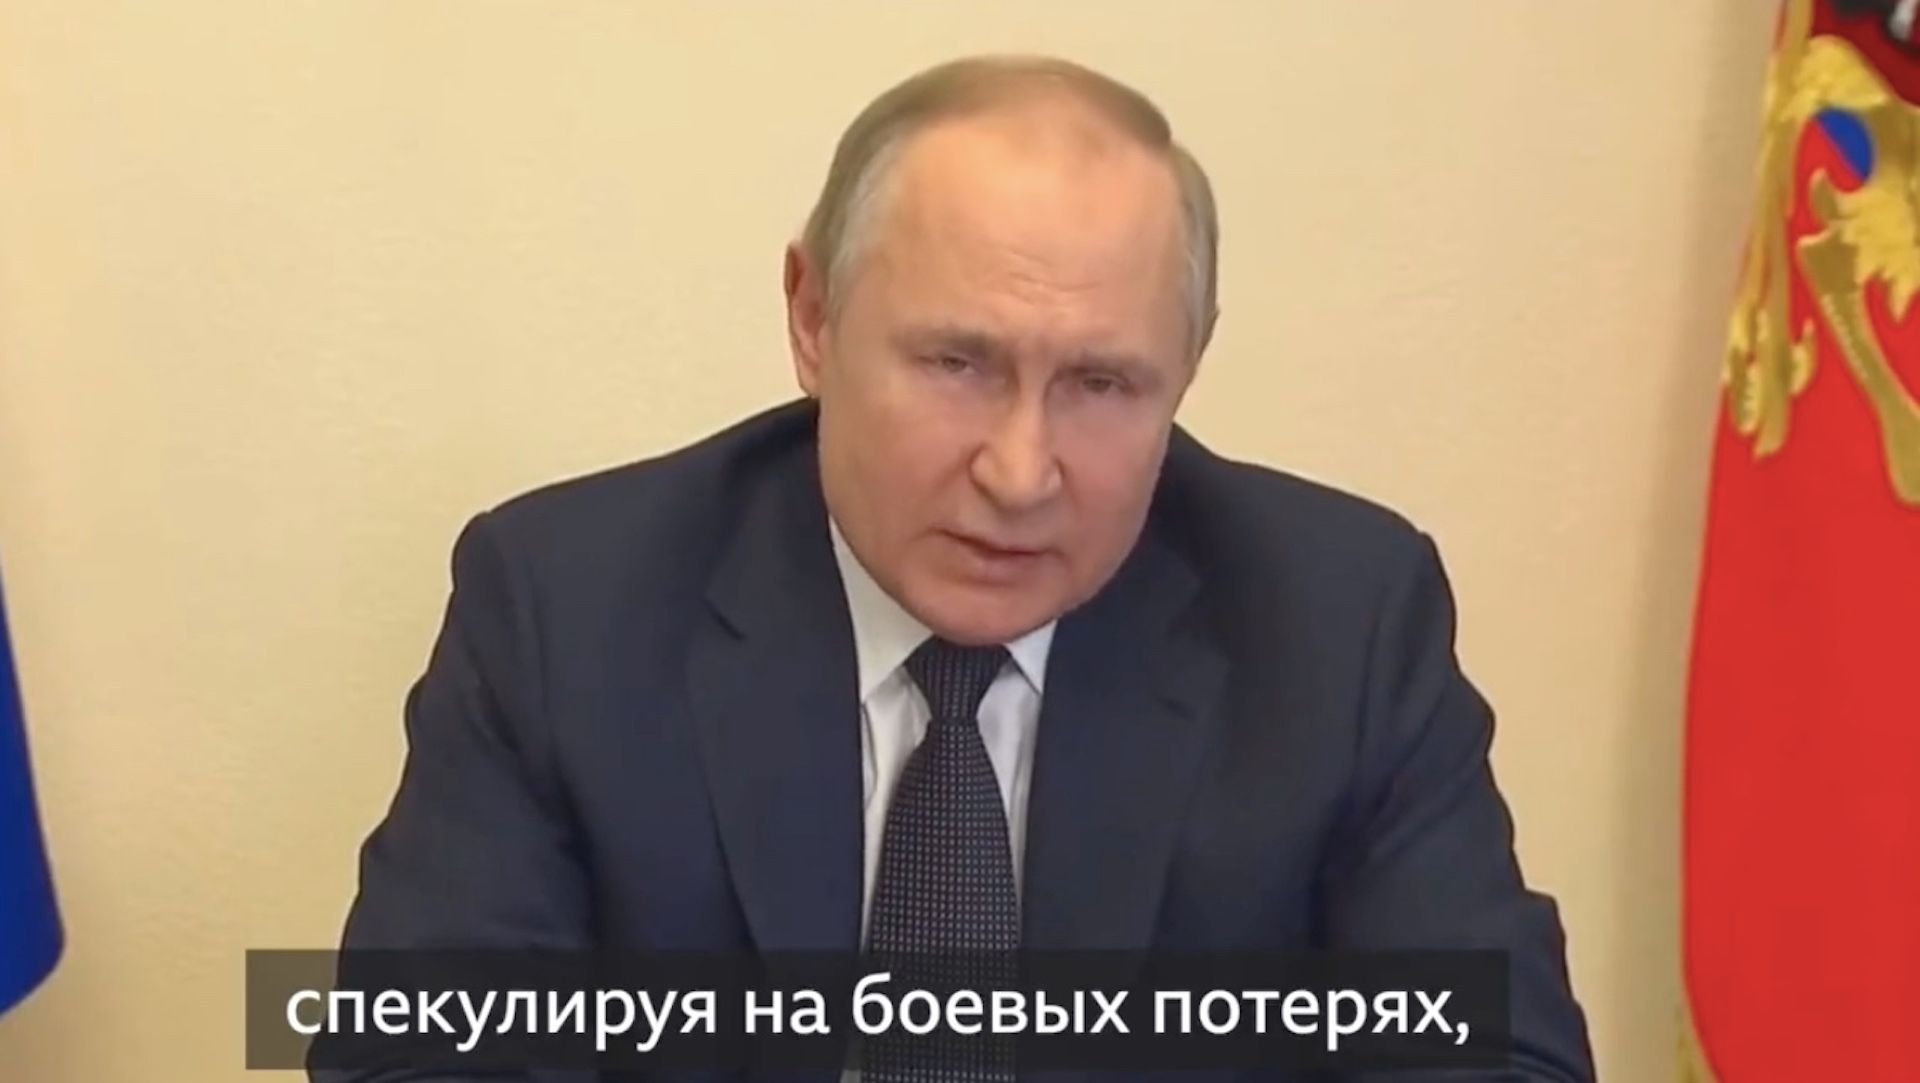 Władimir Putin ostrzega przed zdrajcami, krytykuje go nawet jego były premier